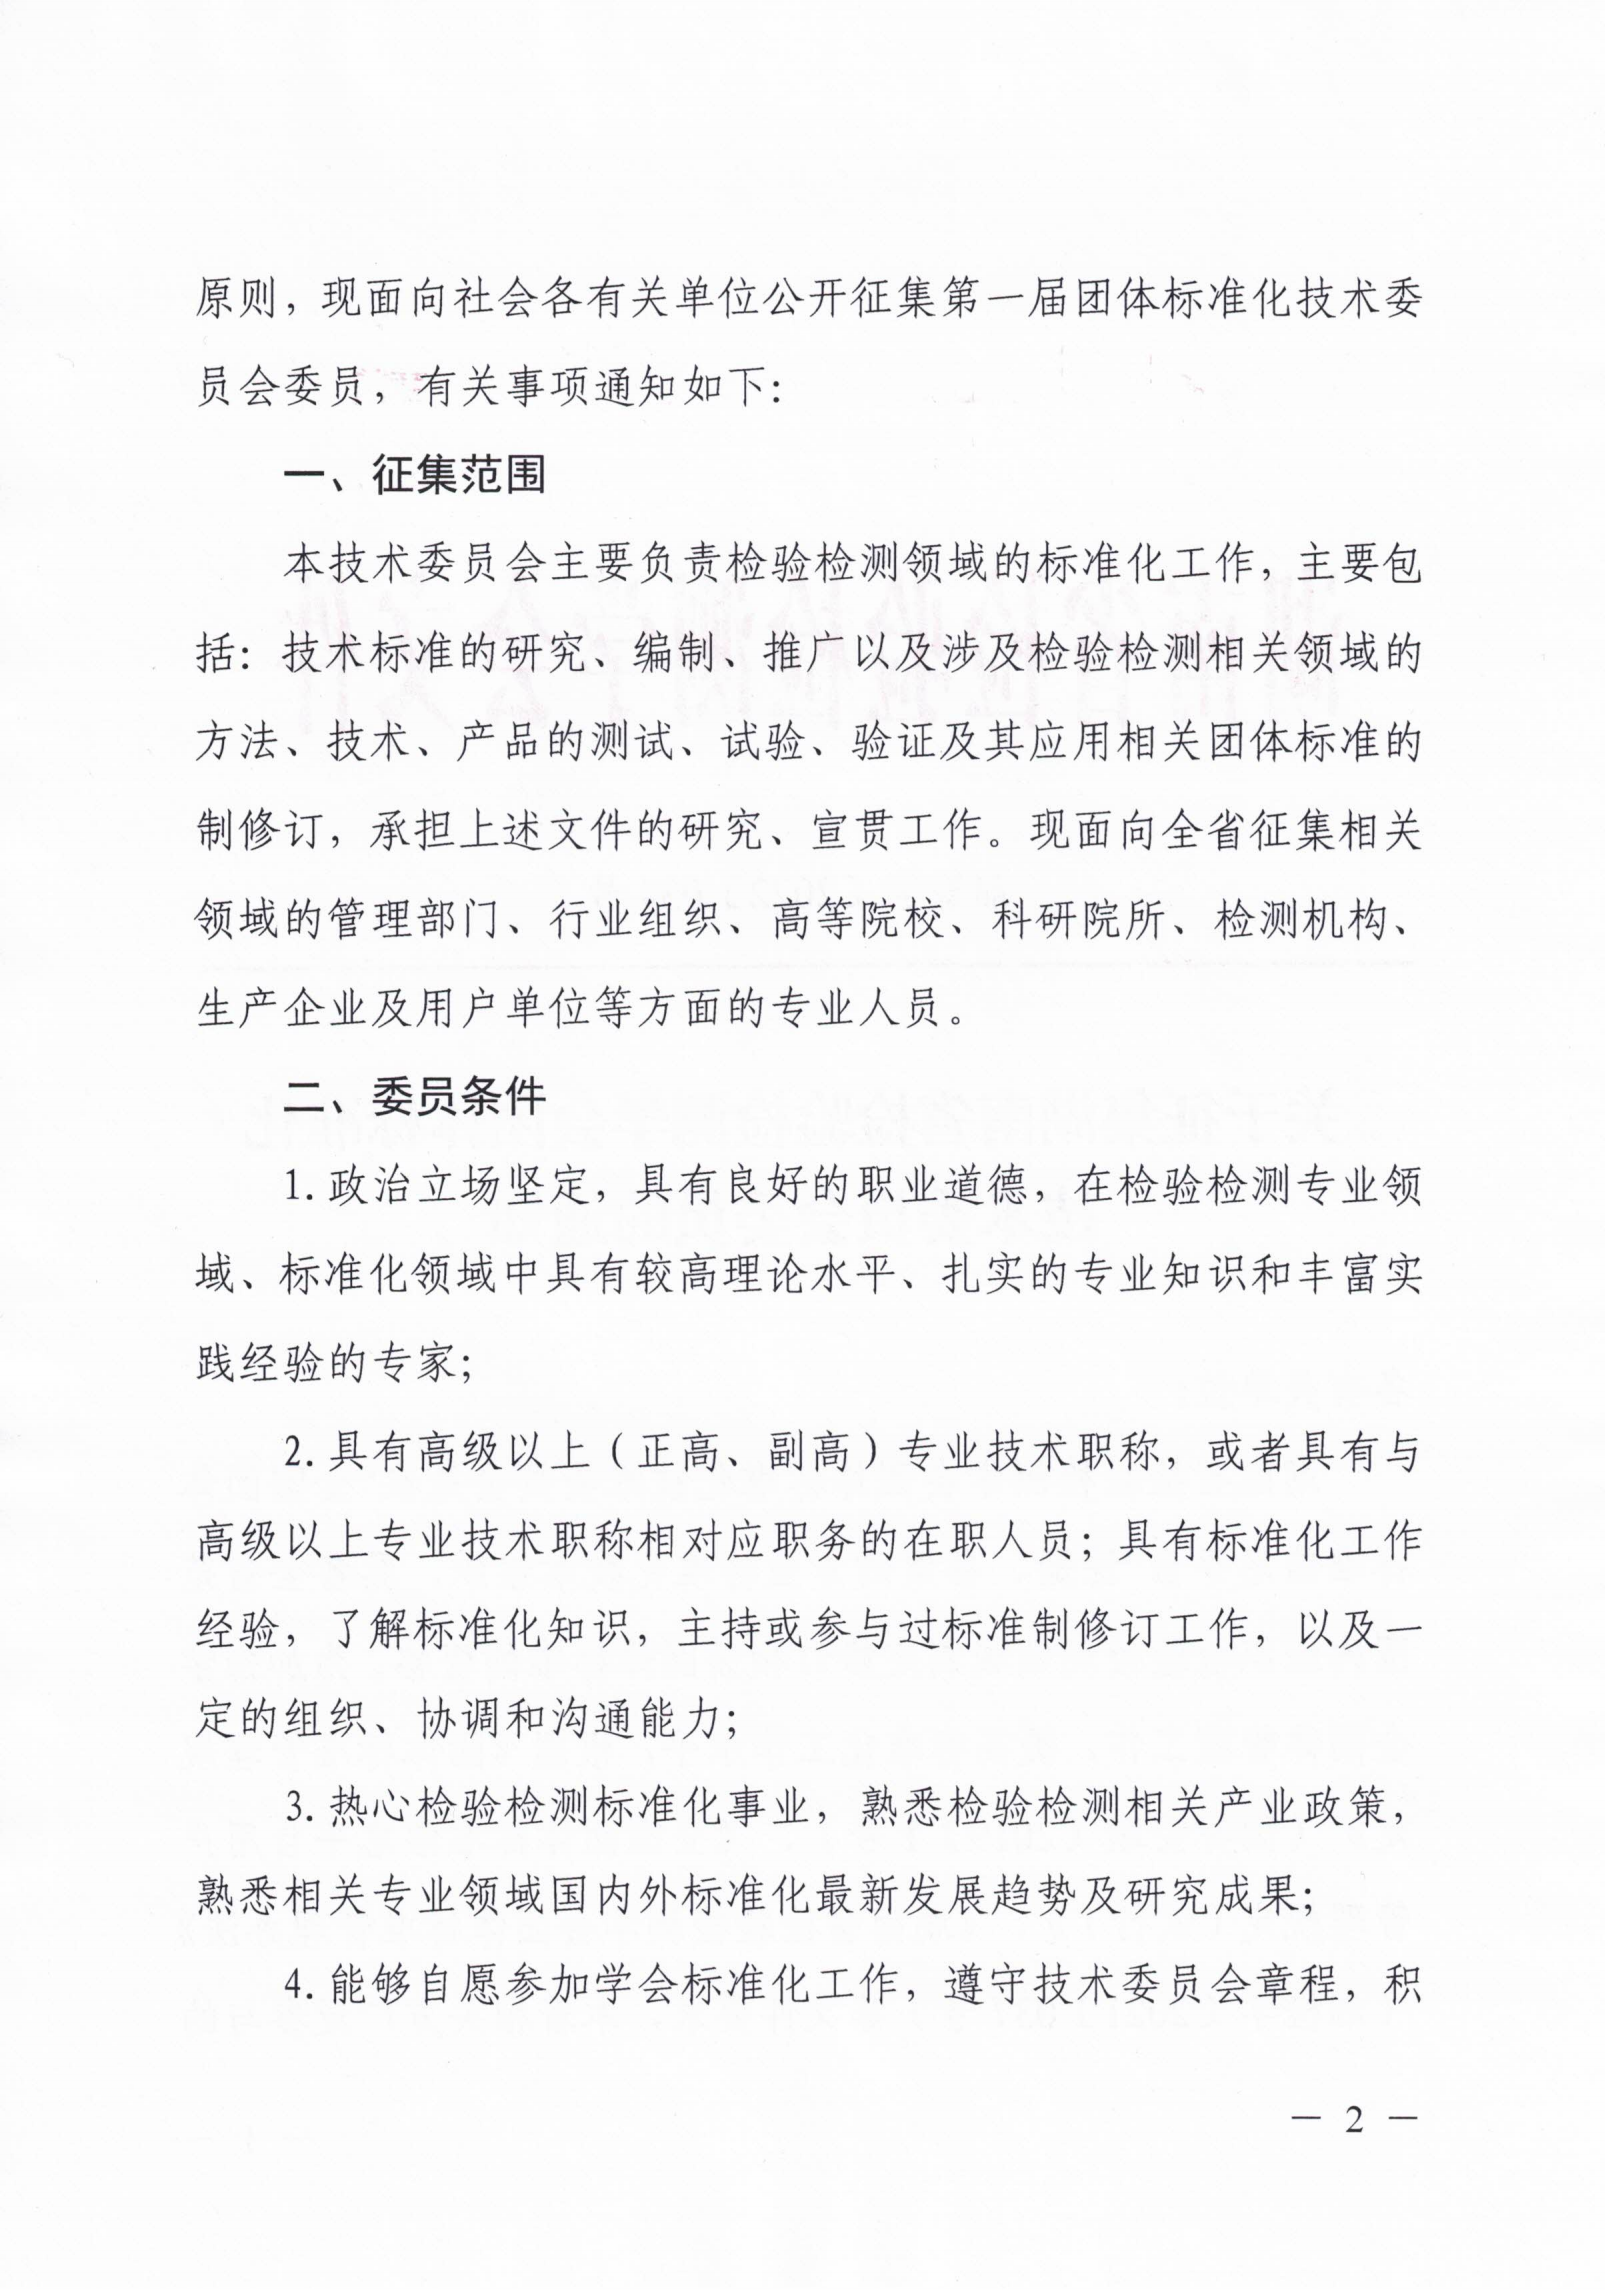 关于征集湖南省检验检测学会团体标准化技术委员会委员的通知_01.png